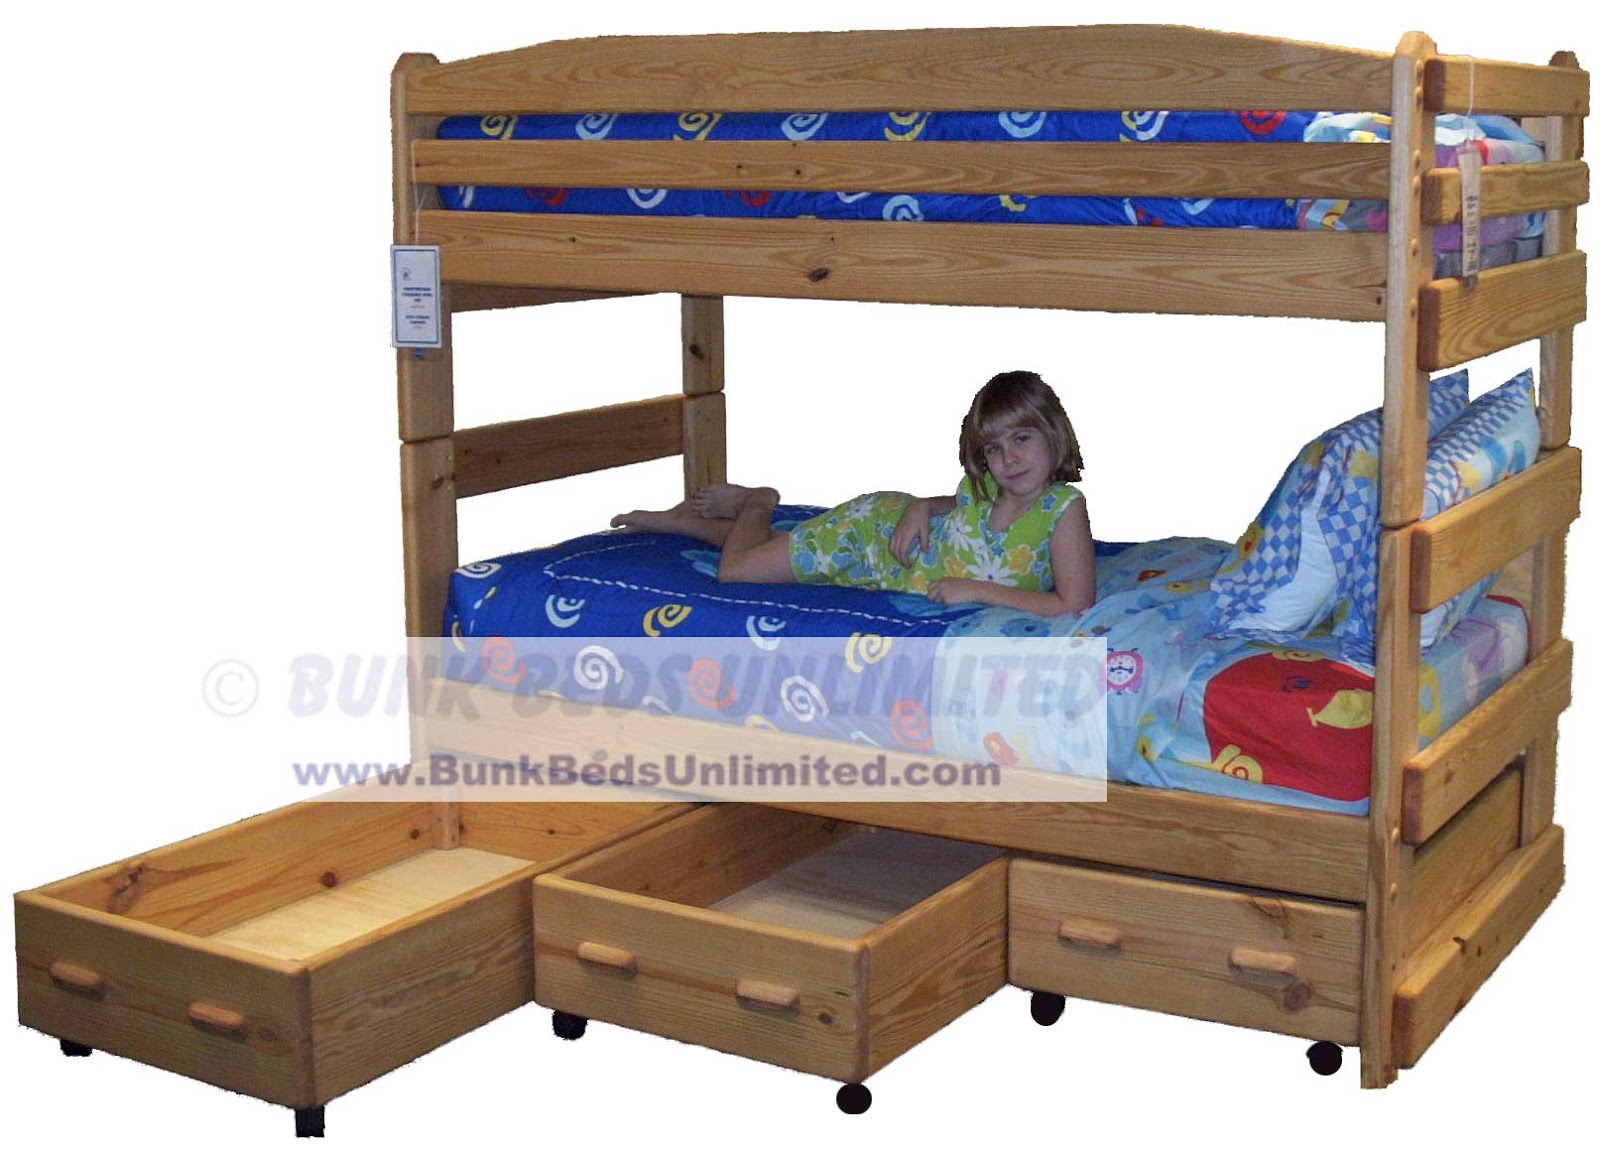 Triple Bunk Bed Plans